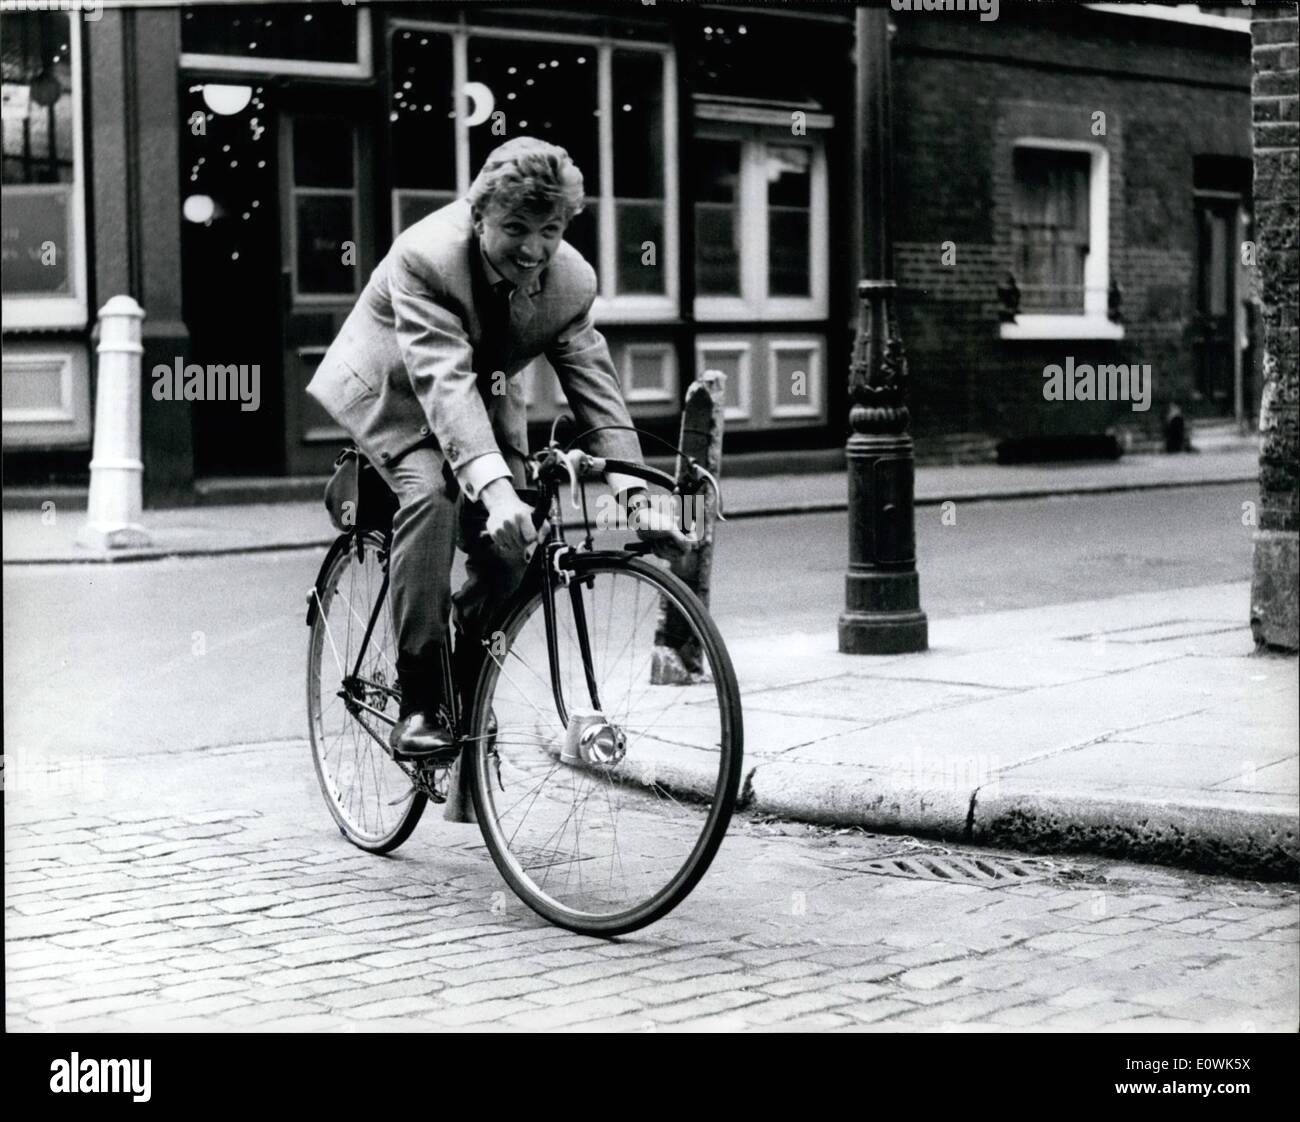 Juin 18, 1963 - 18-6-63 Tommy Steele a interdit de conduire, prend à vélo. Singer Tommy Steele a écopé d'une &pound;30 et interdit de conduire pendant un an hier, en roulant à une vitesse dangereuse. Il a été déclaré qu'il était au volant de sa voiture de sport M.G. à 90 mph sur le Hammersmith survol dans l'ouest de Londres. La nuit dernière, il a emprunté un vélo et suis allé chercher un procès spin. Photo montre : Tommy Steele emprunte un vélo et va pour un spin de première à Londres la nuit dernière. Banque D'Images